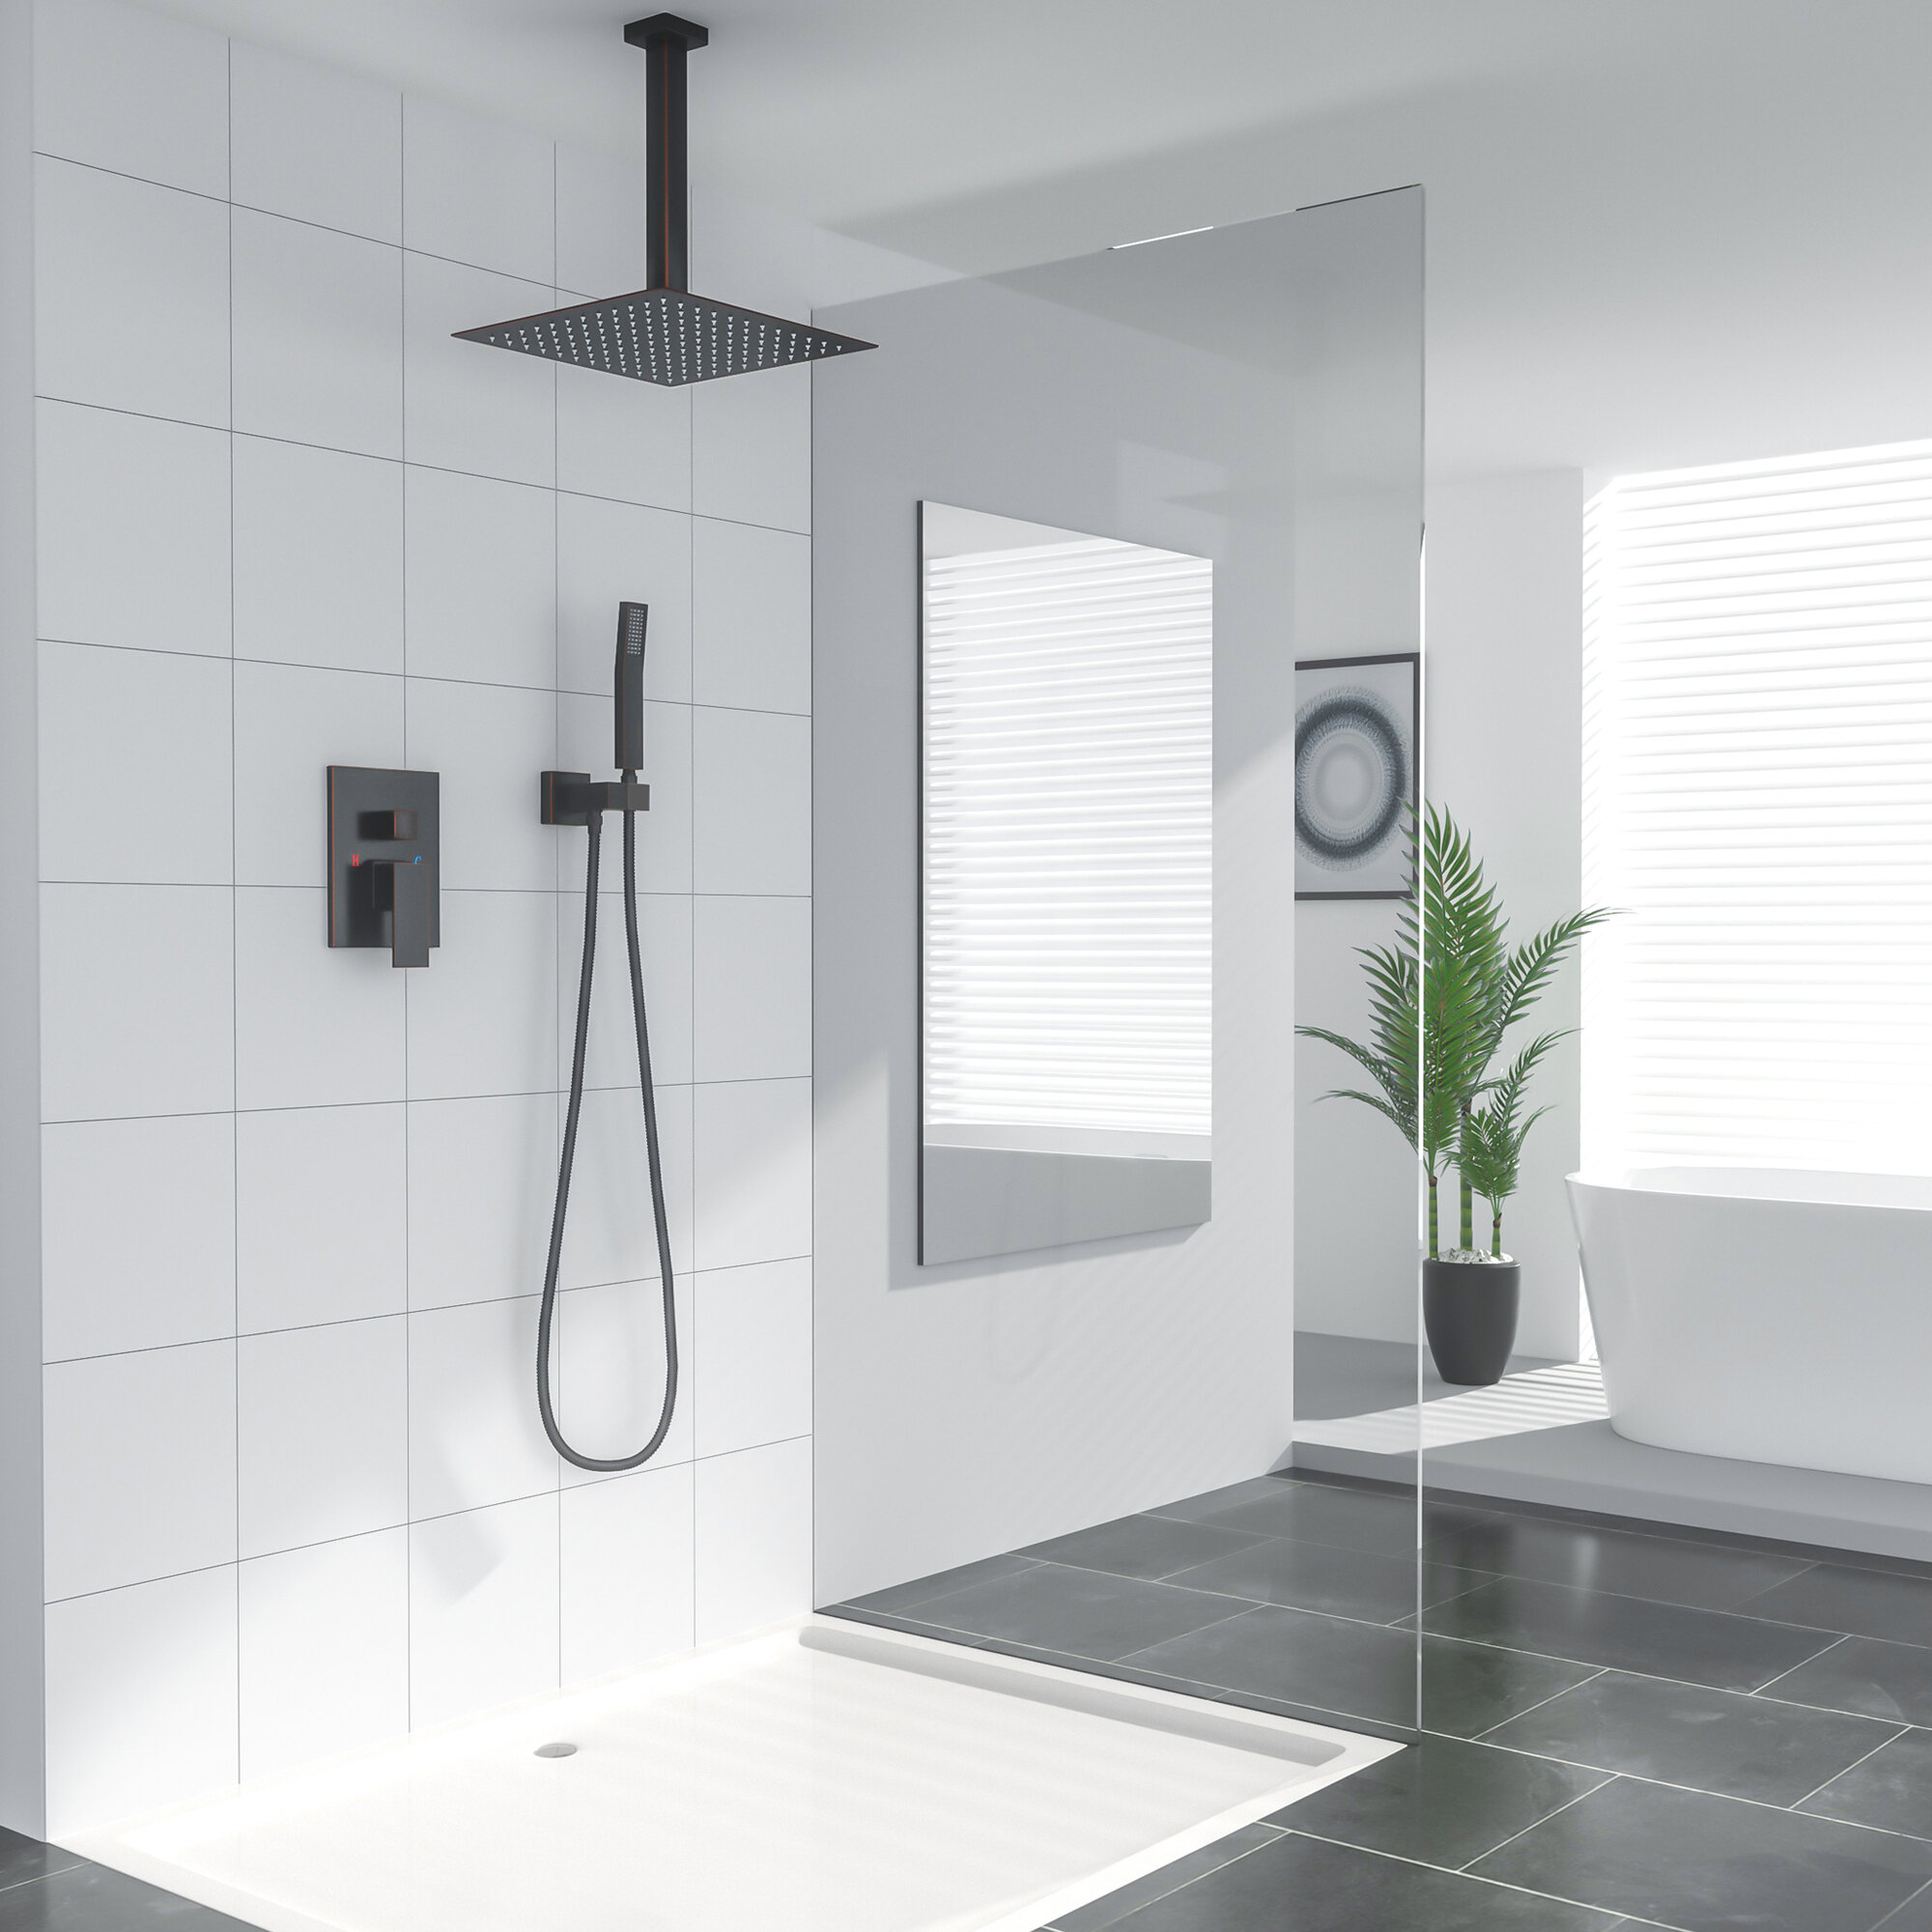 Quality Bathroom Shower Set Shower Head Holder & 1.5m Hose for Bath Mixer 